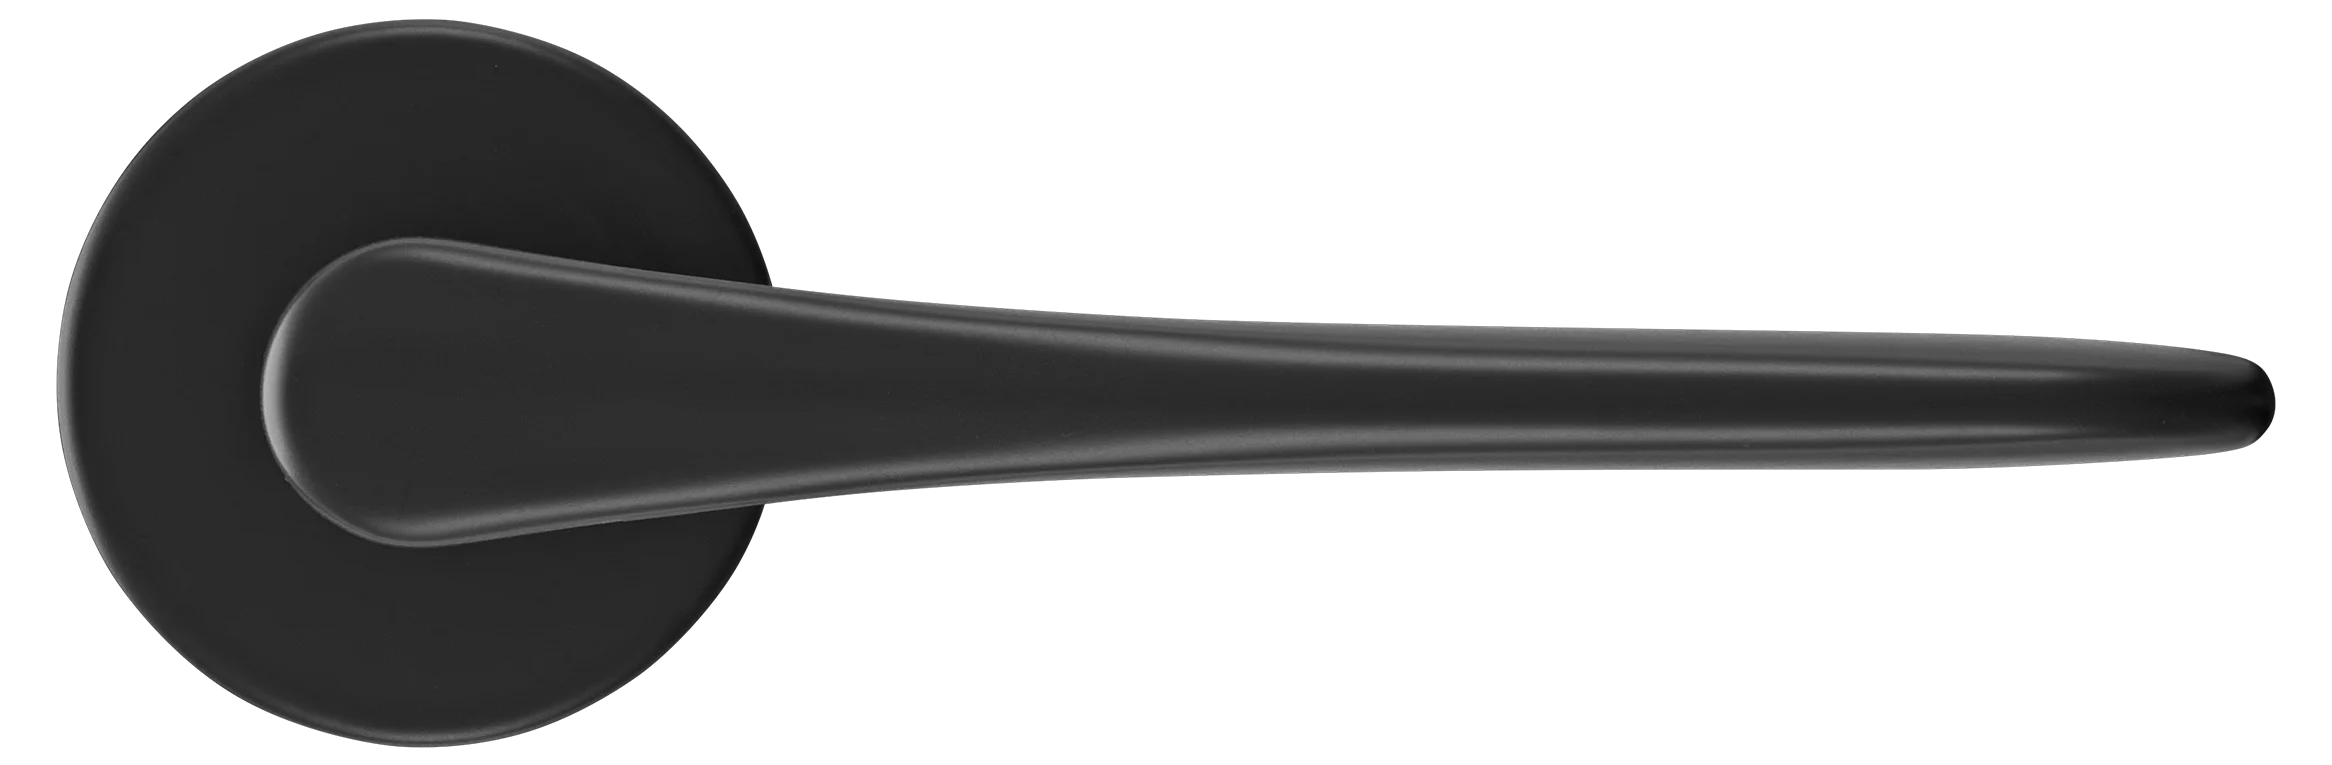 AULA R5 NERO, ручка дверная на розетке 7мм, цвет -  черный фото купить в Астане